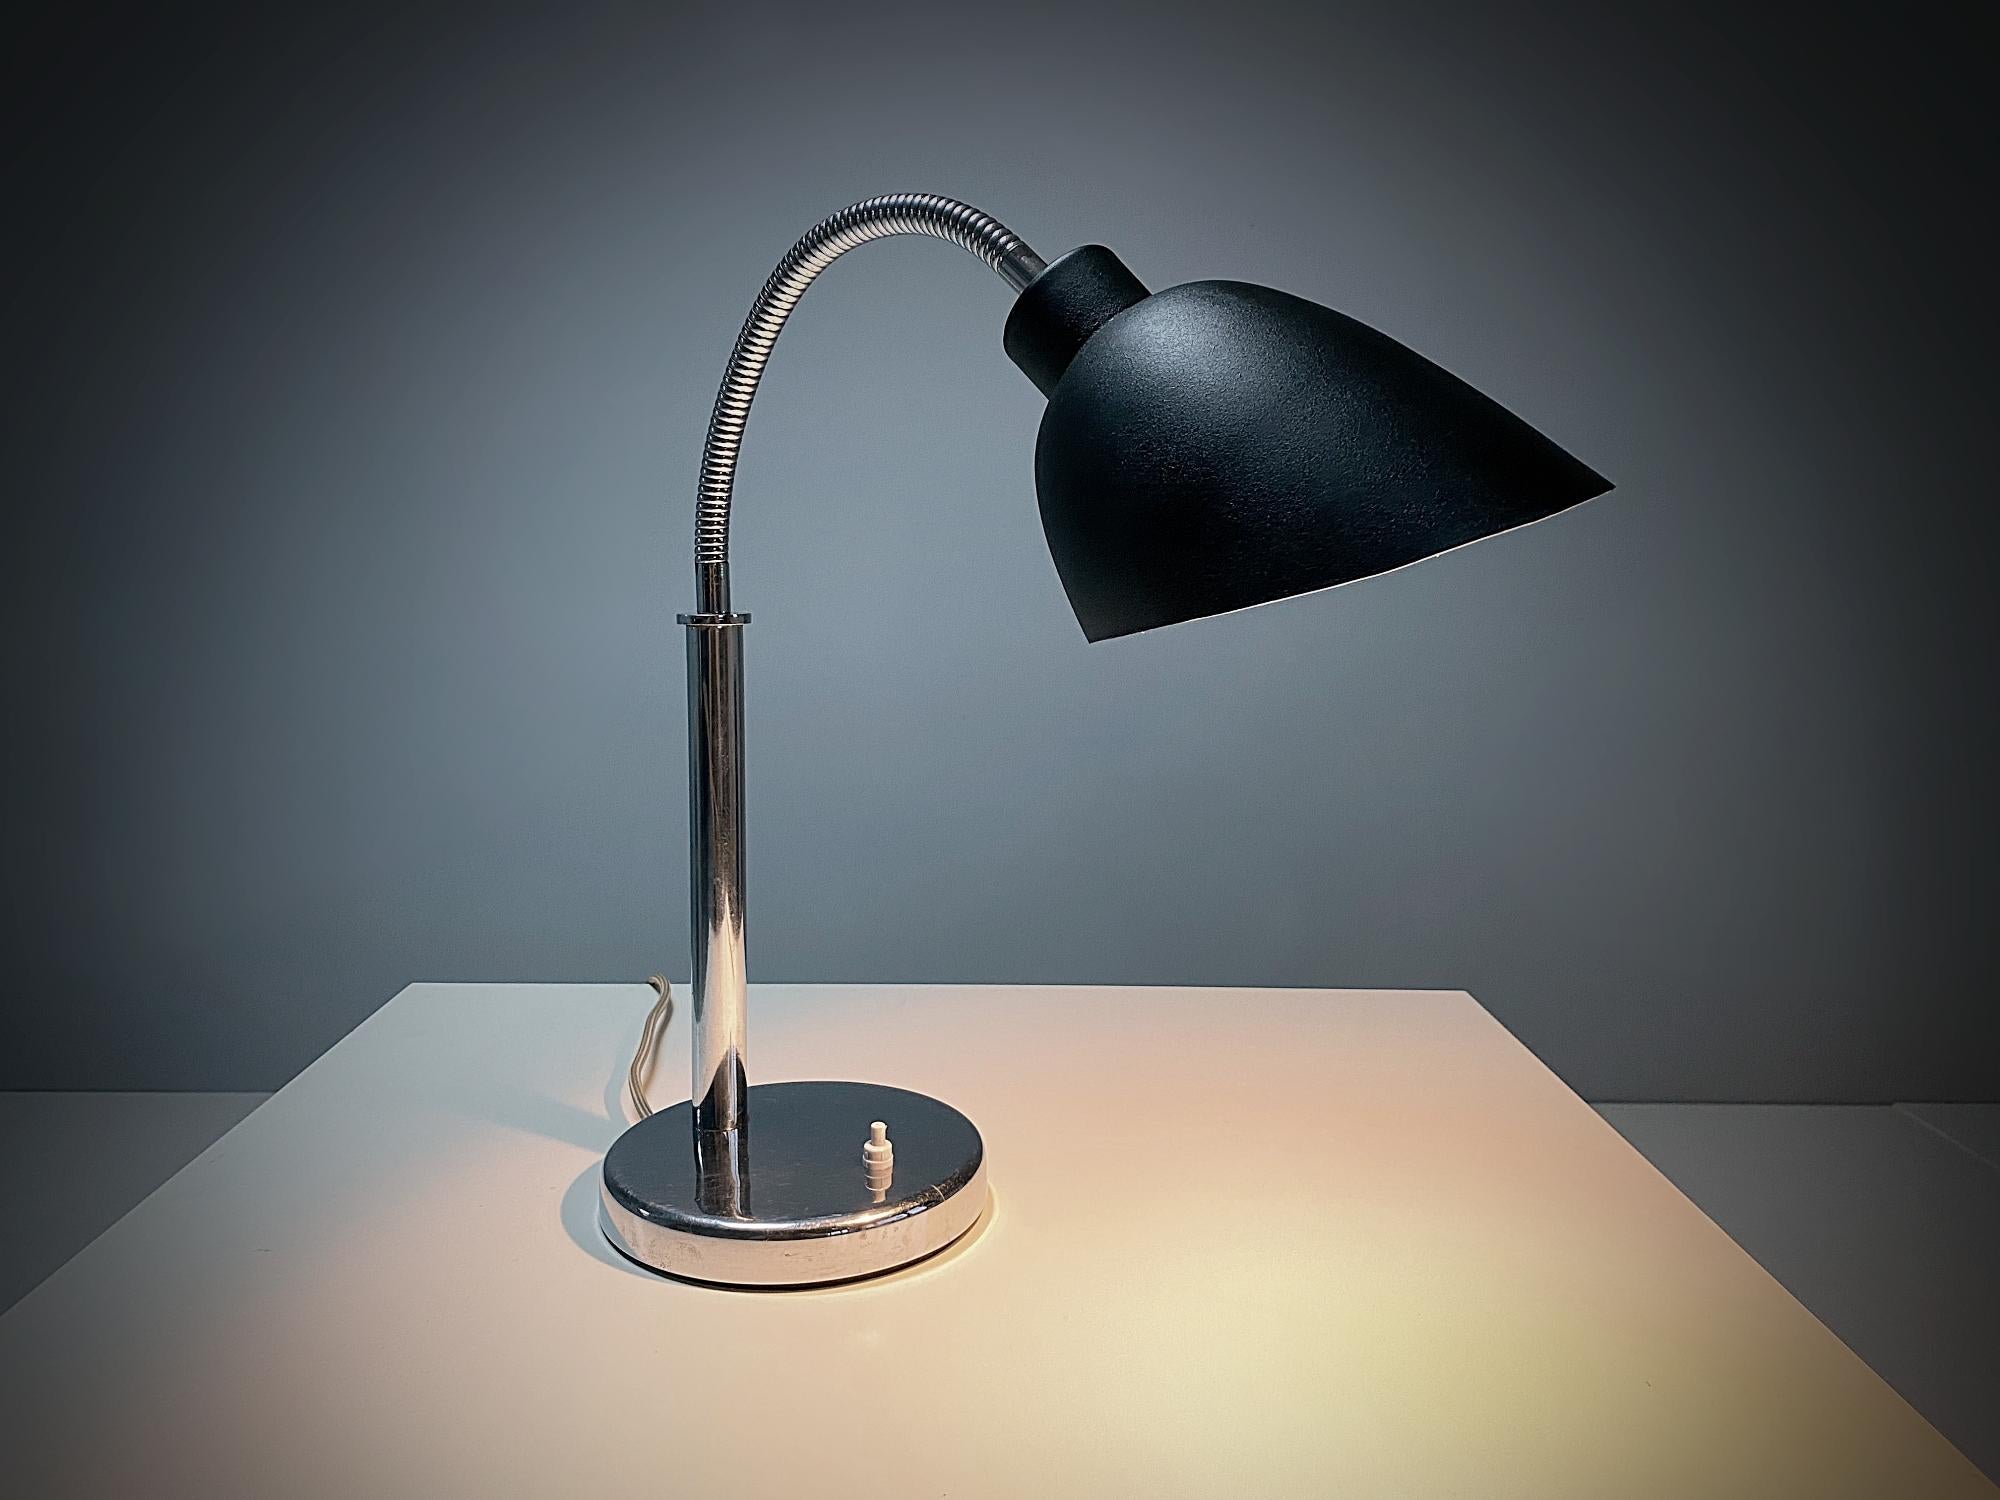 Wichtige Arne Jacobsen AJ 8 modernistische verchromte und schwarz lackierte Messing/Legierung Tischlampe hergestellt in 1920er Jahren, Dänemark. Es handelt sich um die erste Lampenserie, die Arne Jacobsen in den 1920er Jahren entwarf. Mit ihrem